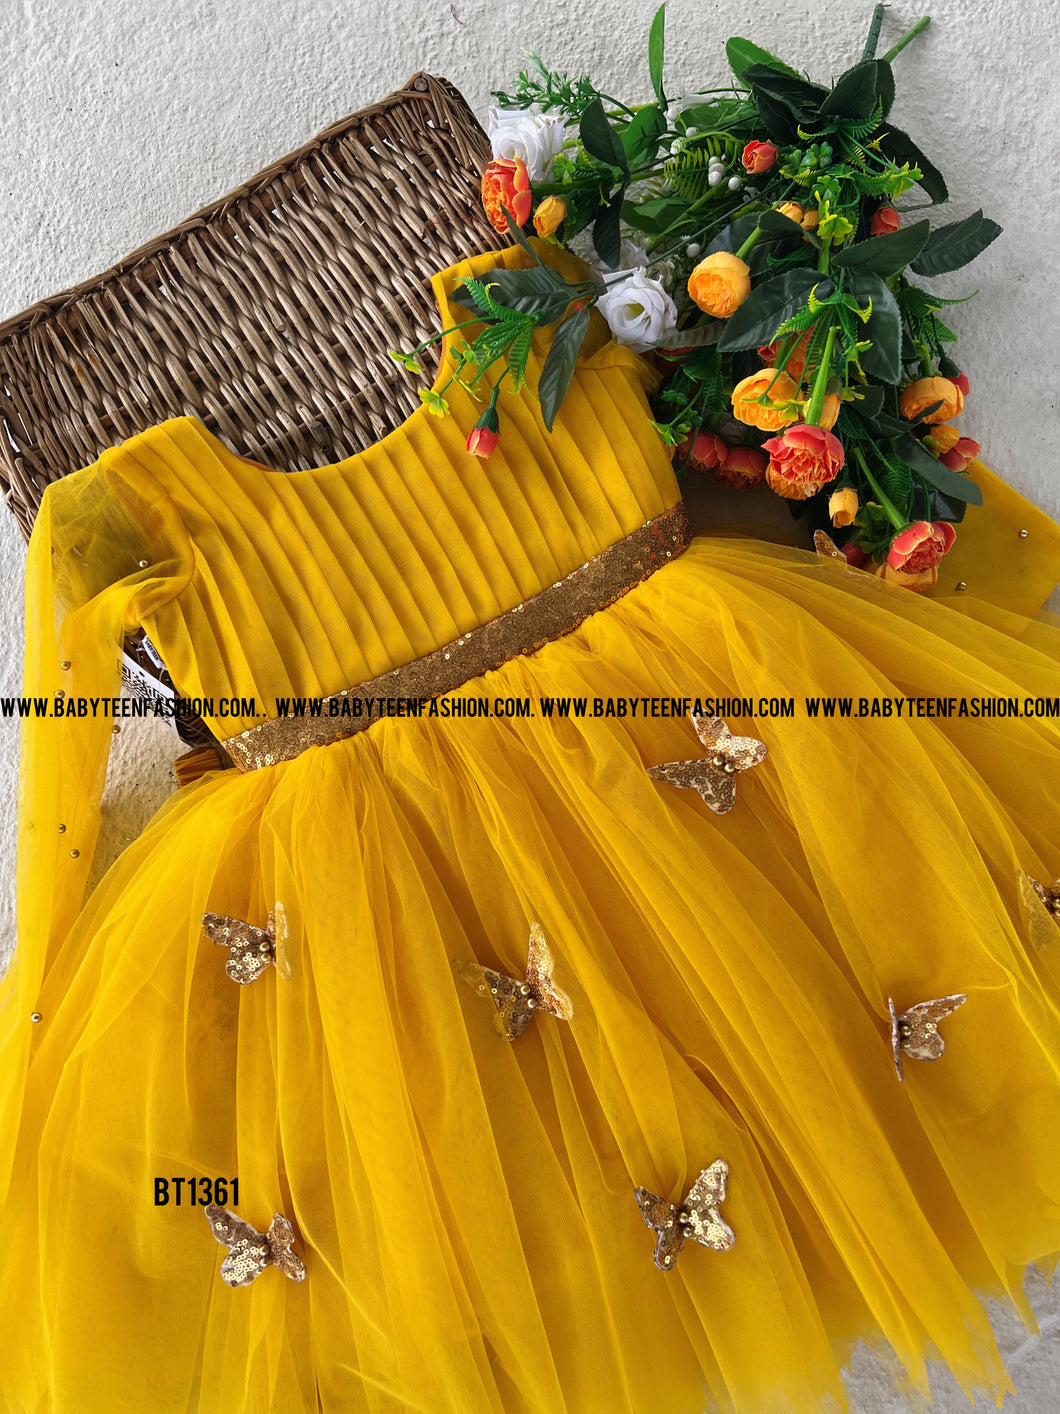 BT1361 Golden Sunbeam Dress - Your Little Ray of Sunshine